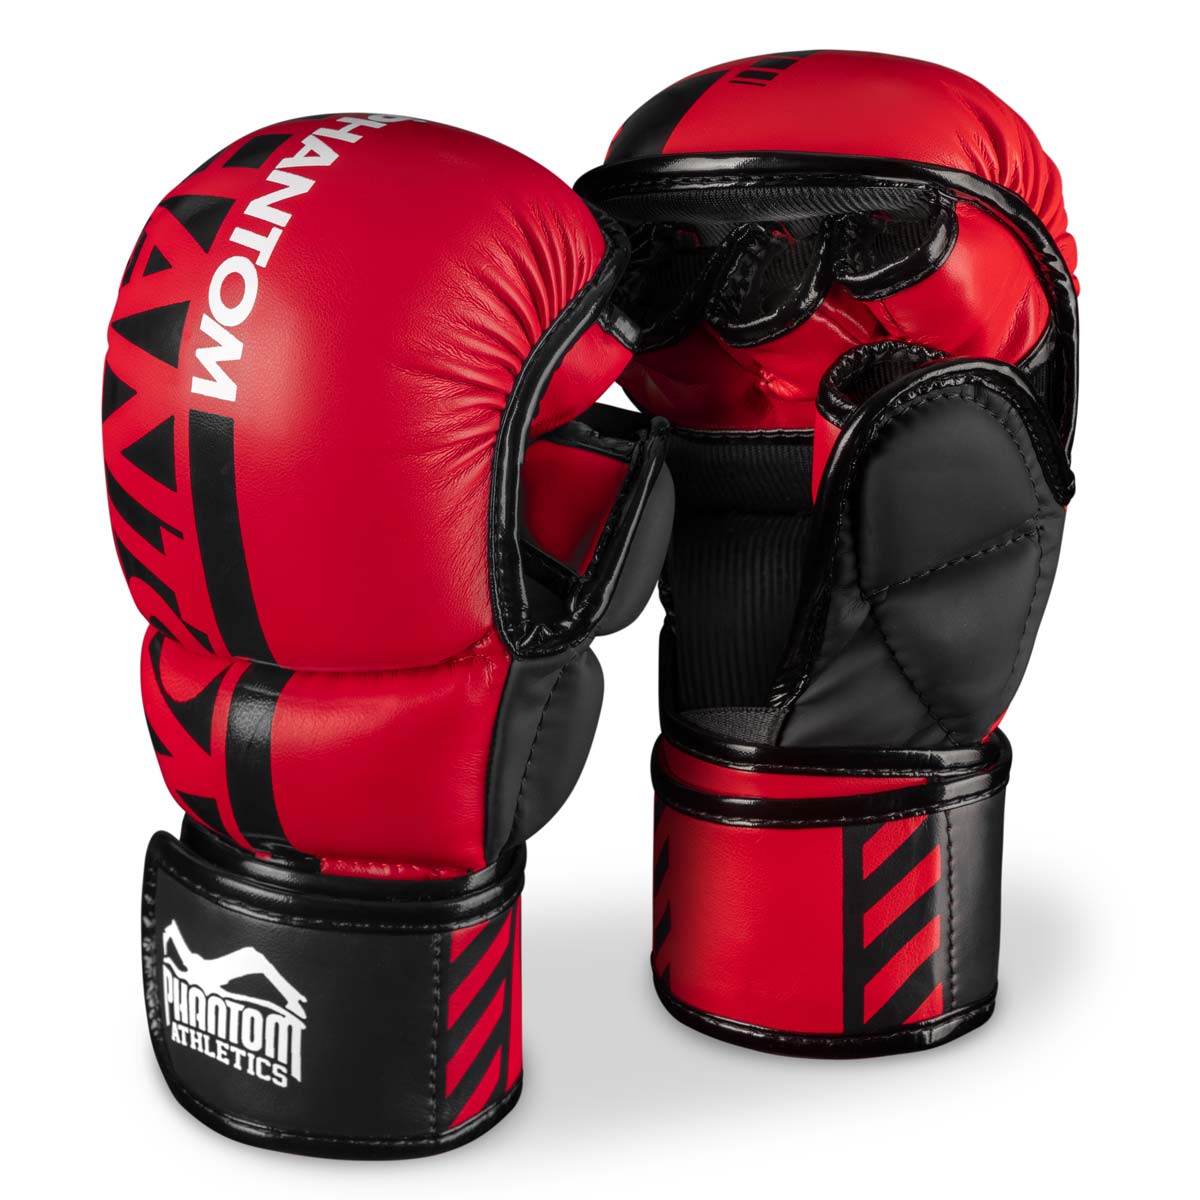 As luvas de sparring Phantom MMA. A luva mais segura para o seu treinamento em artes marciais. Agora na cor vermelha limitada.